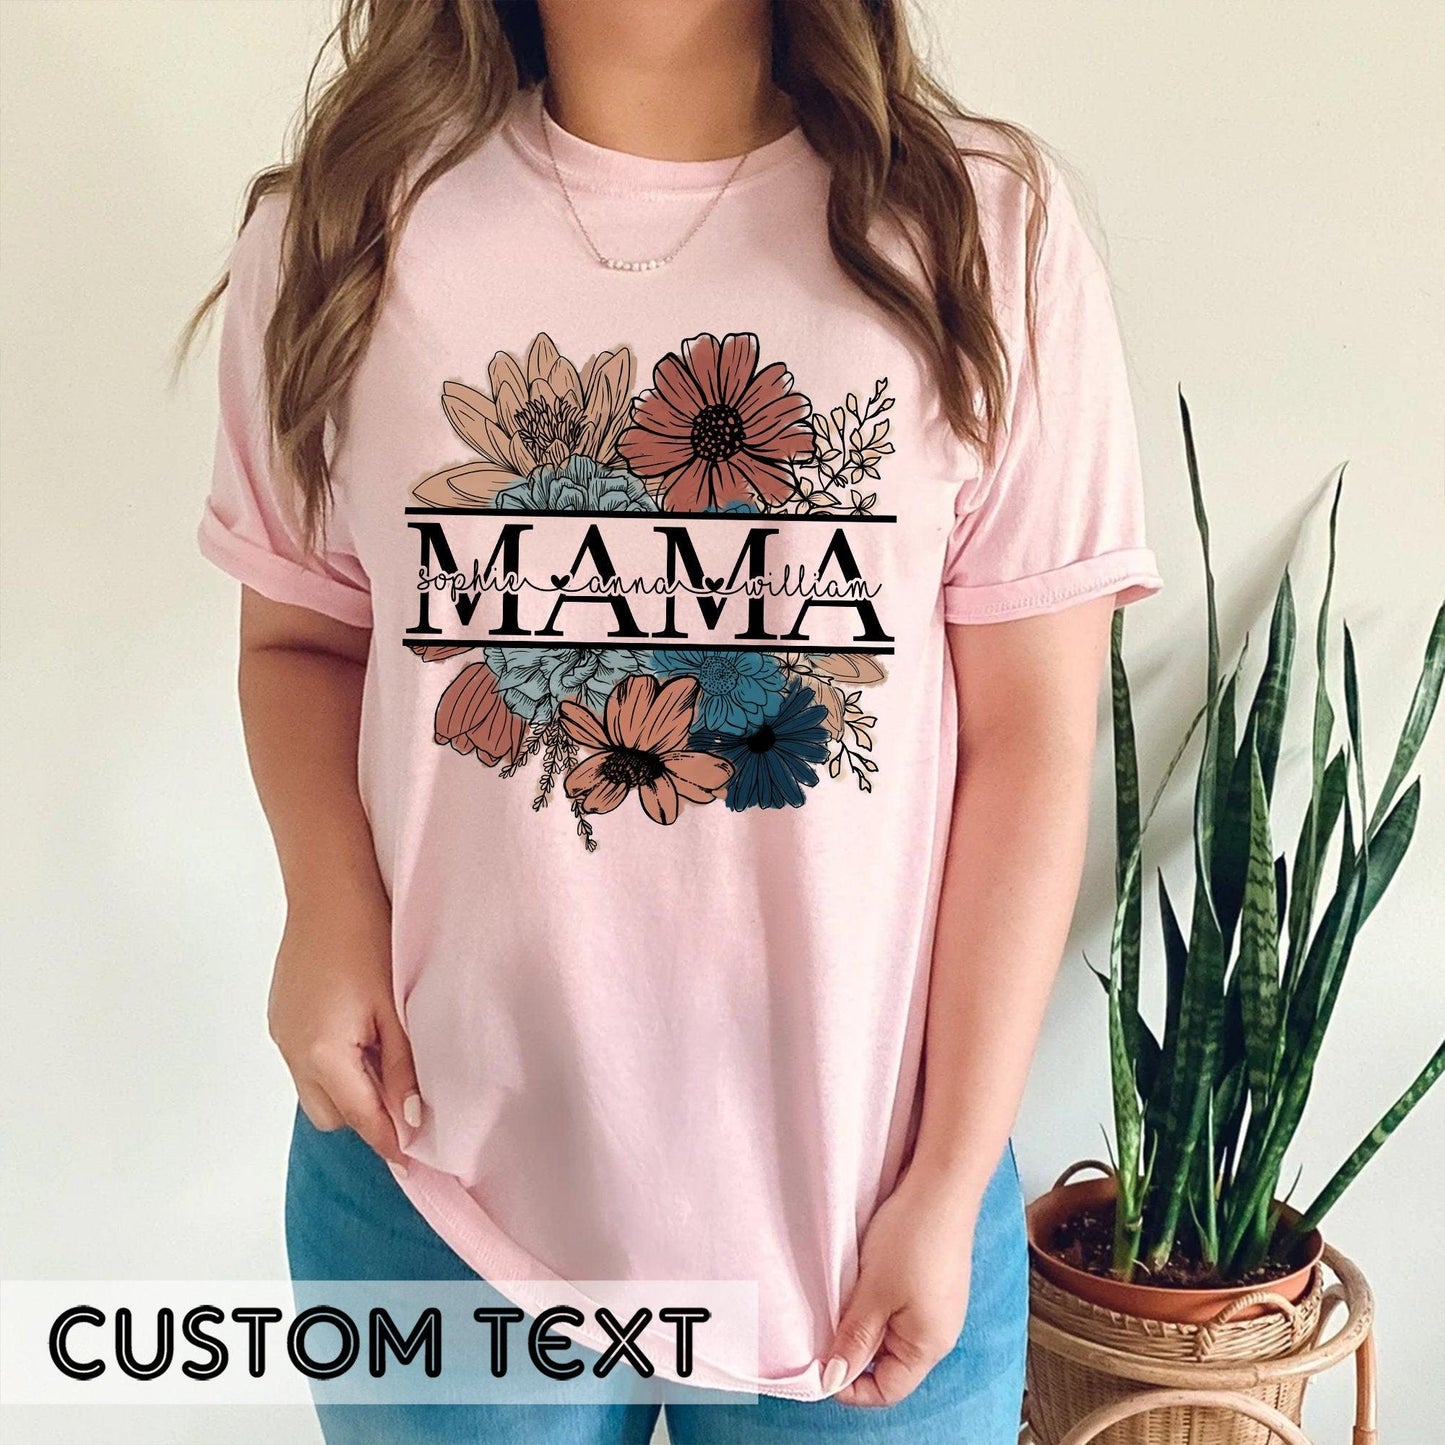 Vintage Blumen Mama-T-Shirt: Personalisiert mit Kindernamen - Ideales Geschenk für Mütter - GiftHaus